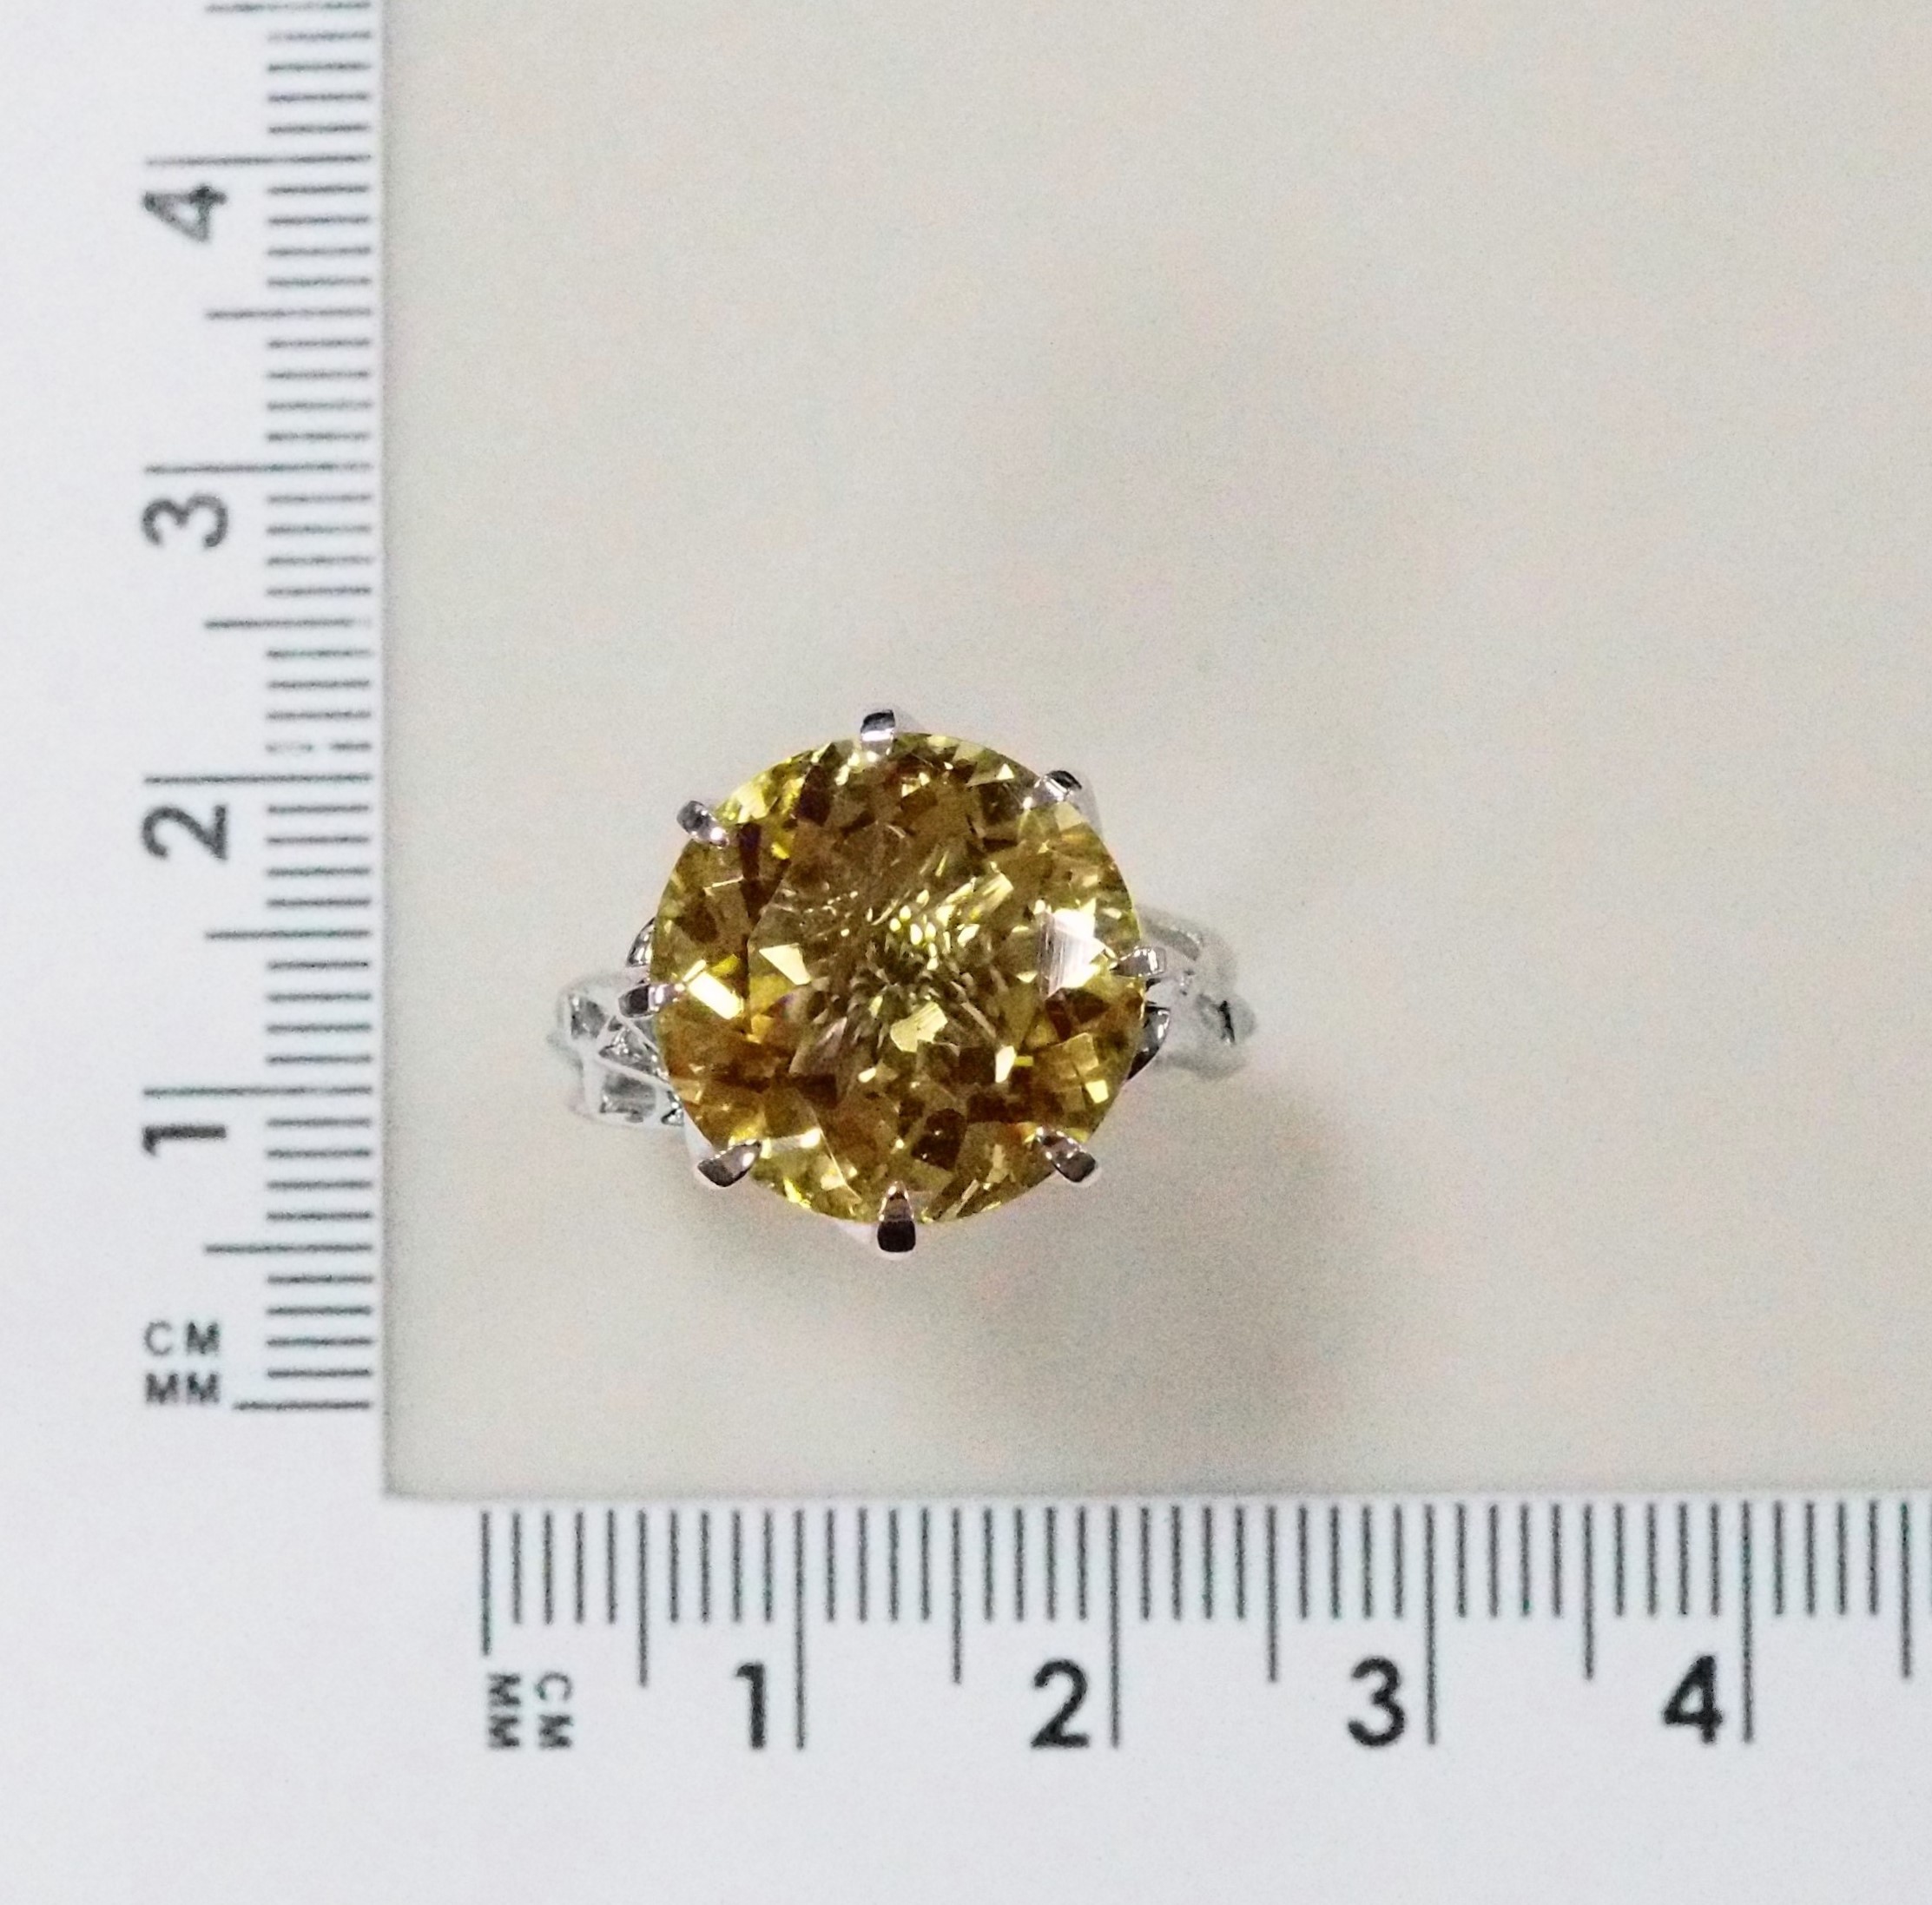 Кольцо из белого золота с цитрином